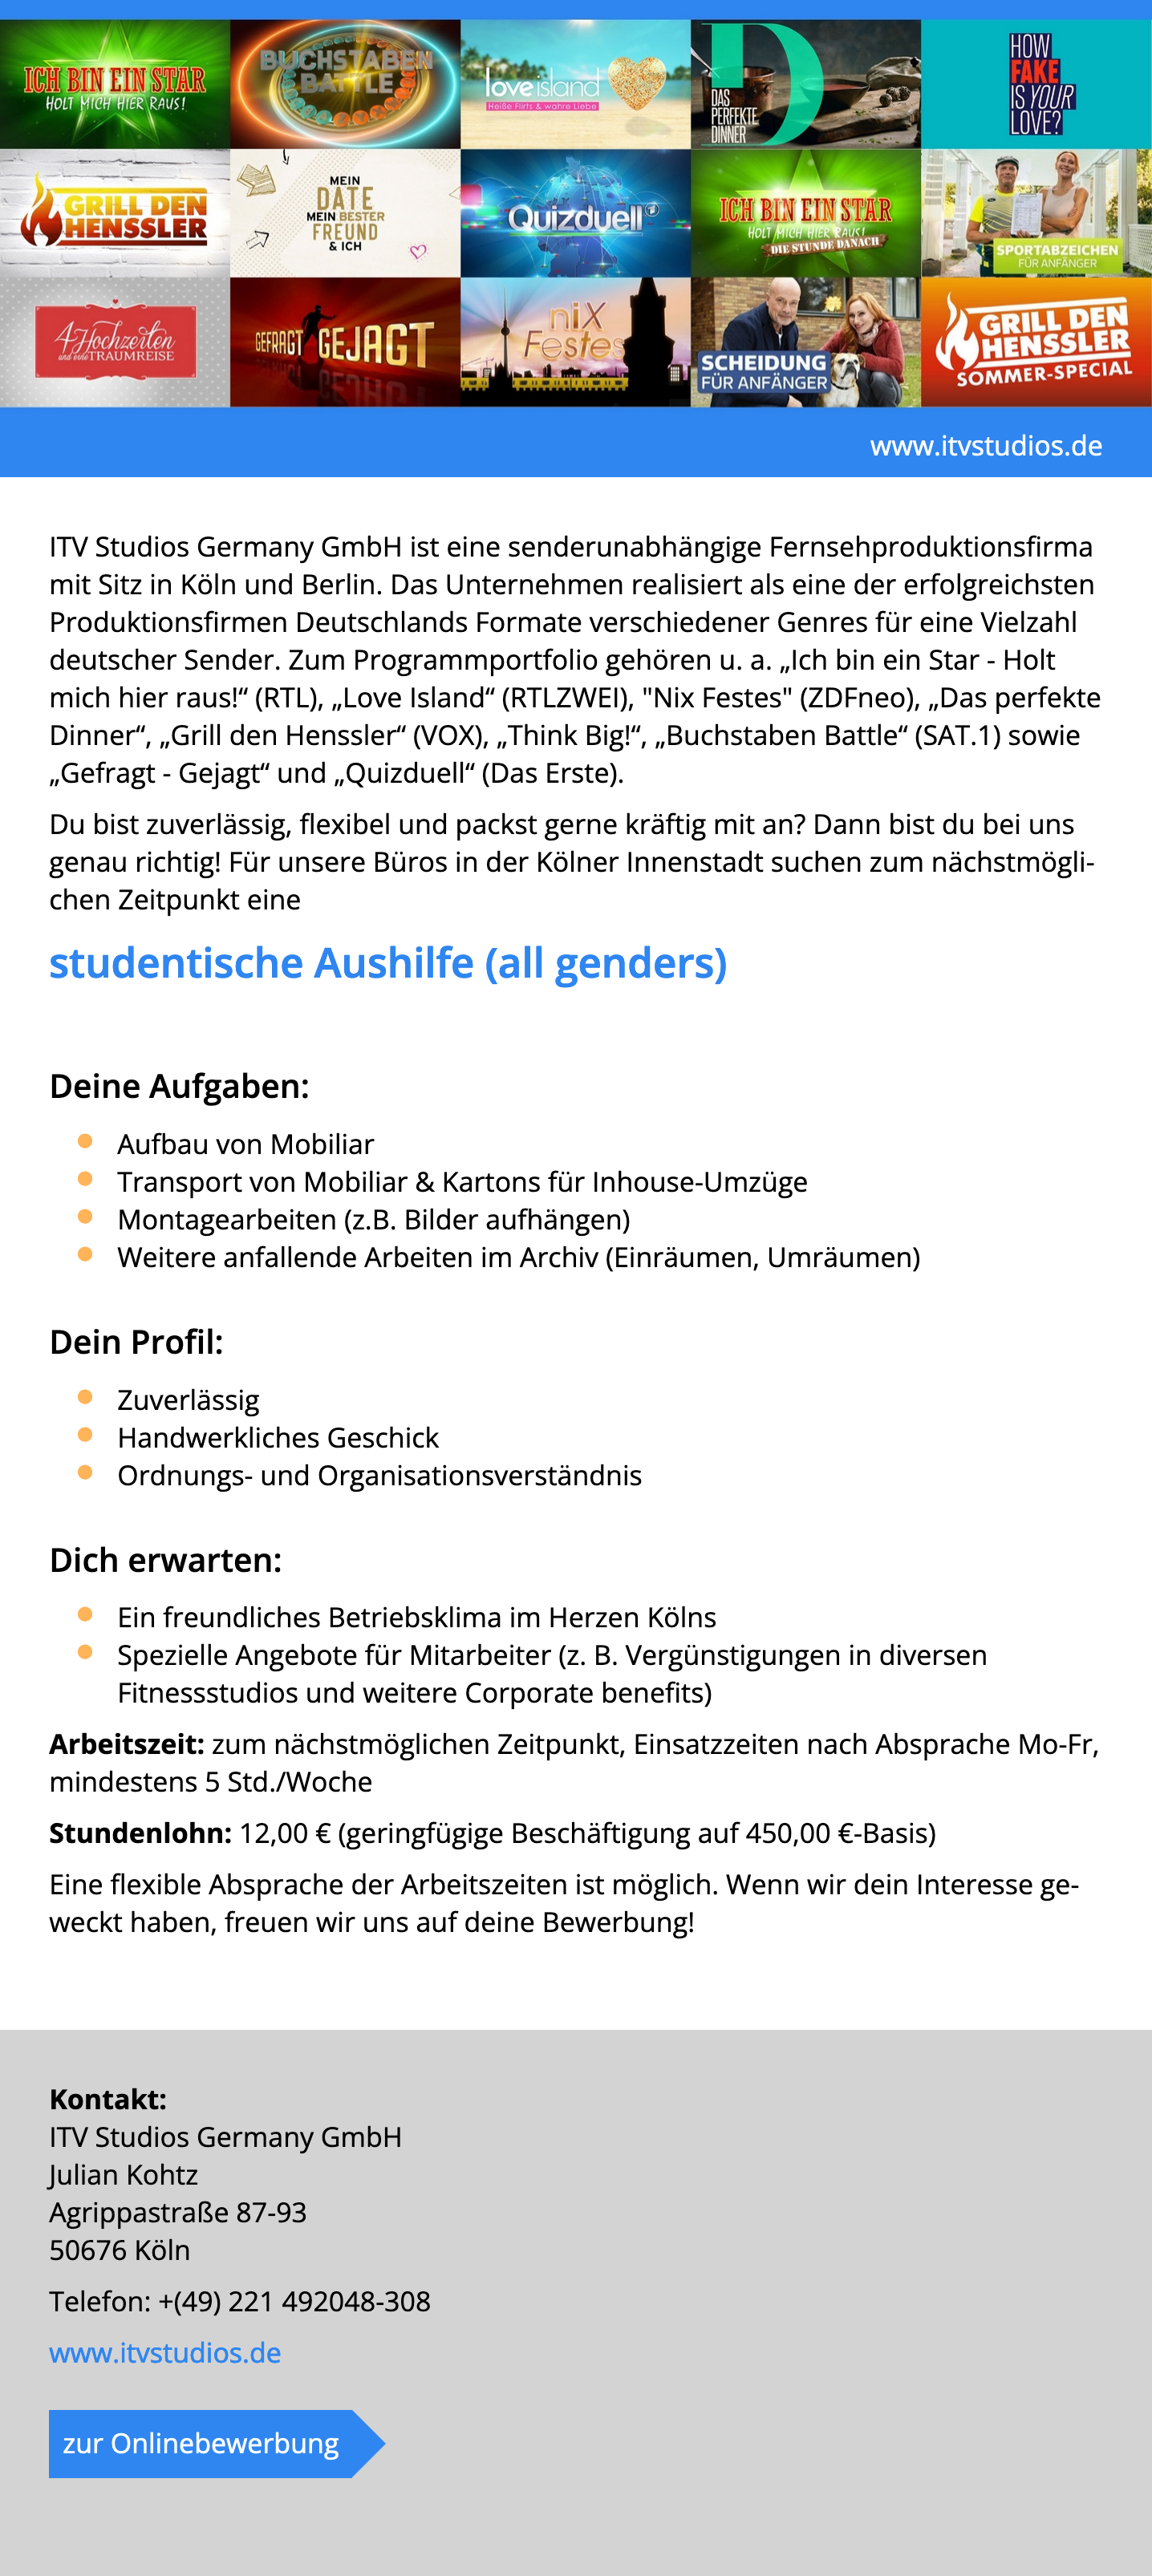 Studentische Aushilfe (all genders)